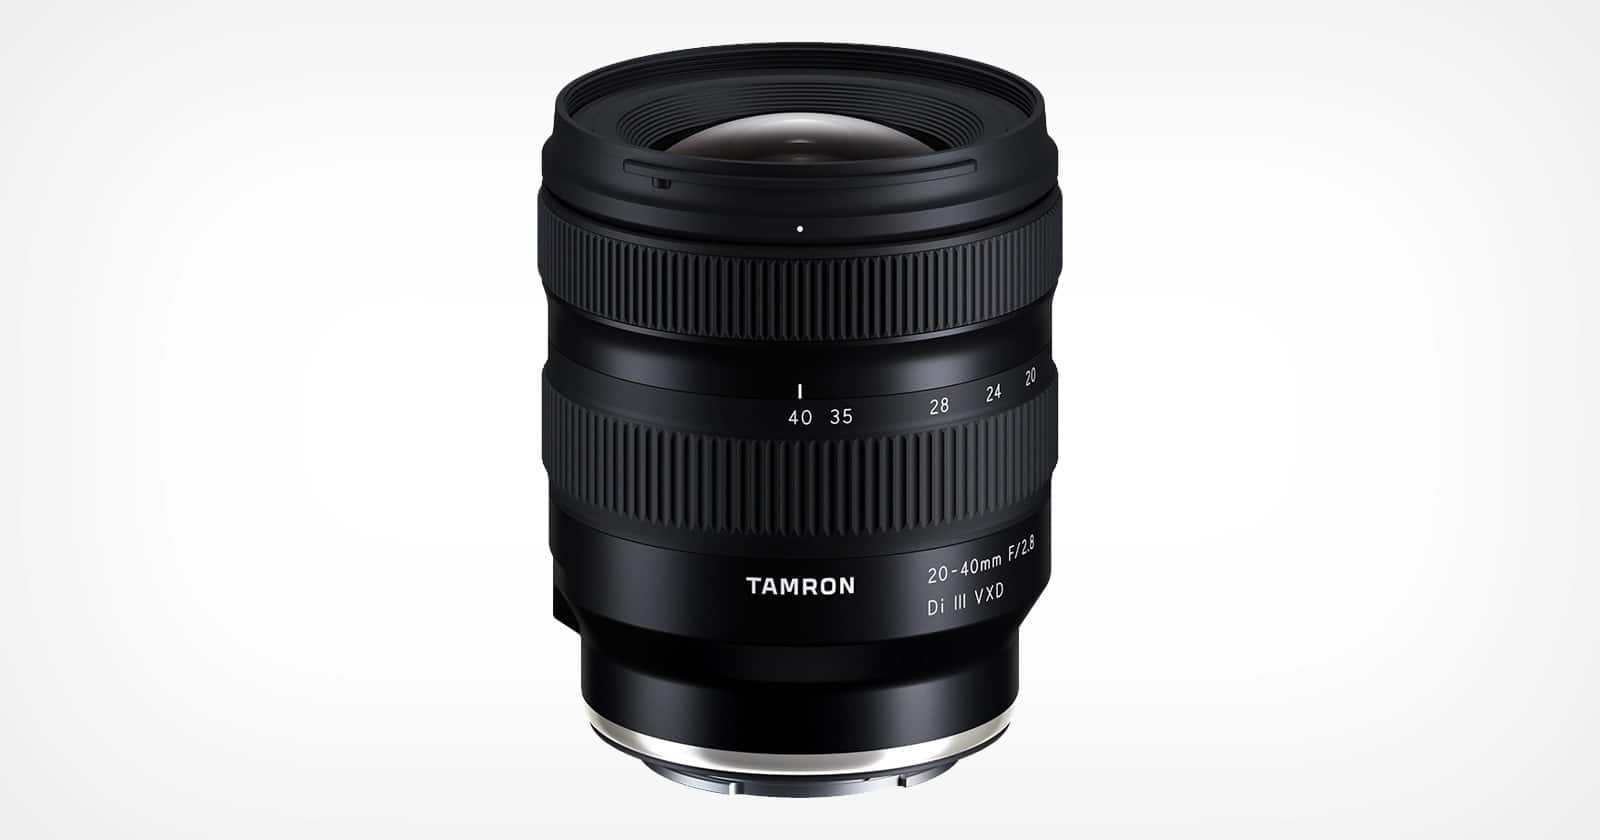 Tamron ra mắt ống kính 20-40mm F2.8 cho Sony E, ống kính nhỏ và nhẹ nhất trong phân khúc